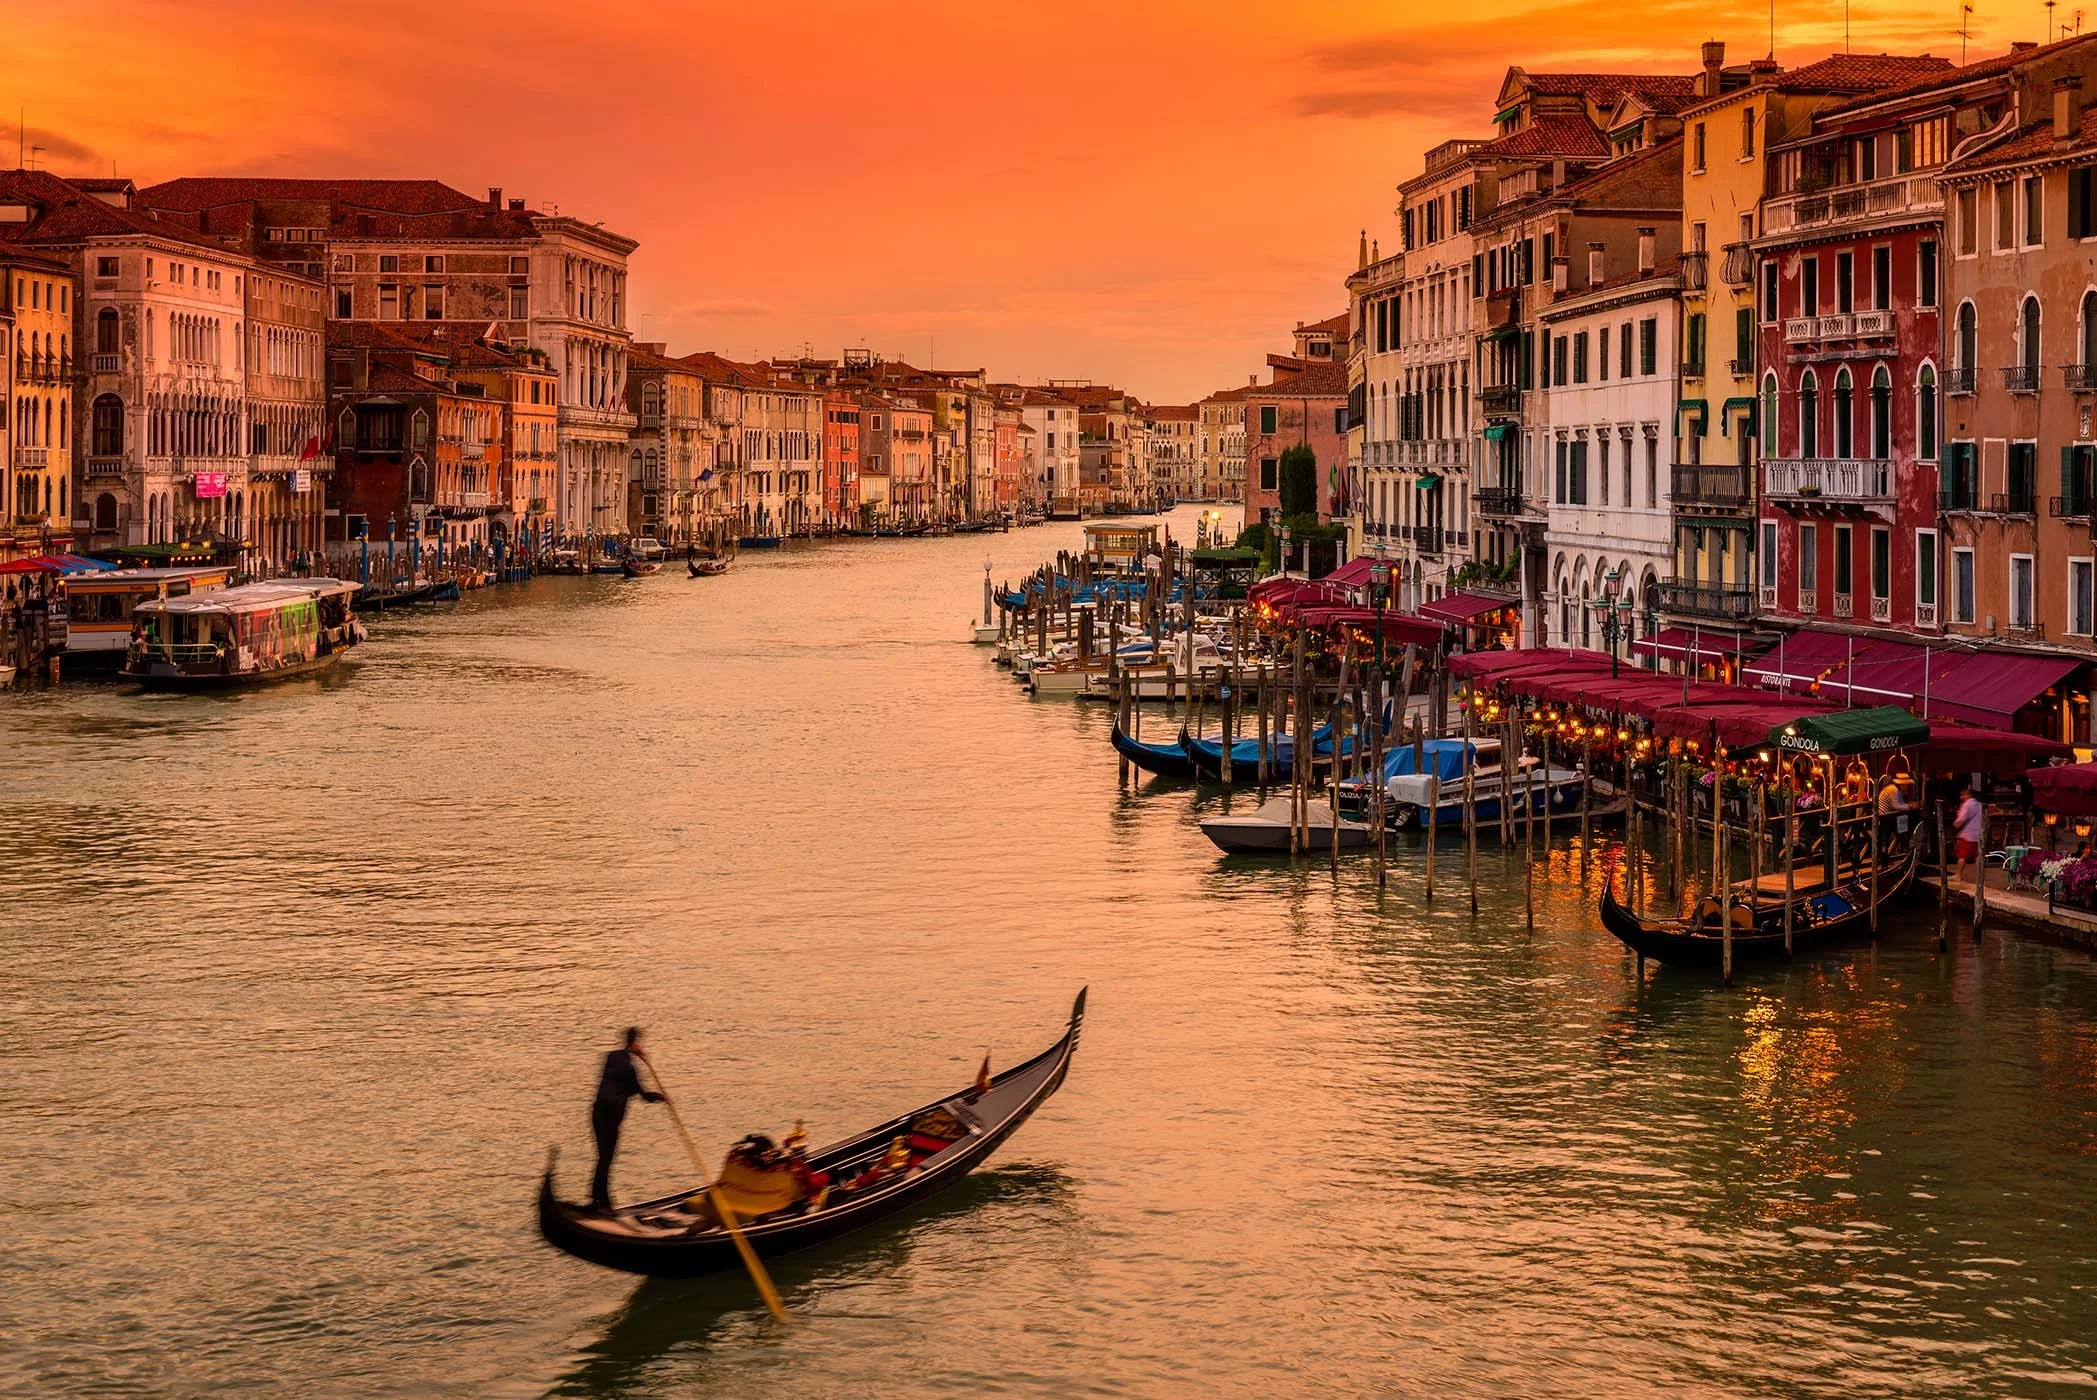 Venecia se convierte en la primera ciudad del mundo en cobrar entrada a turistas